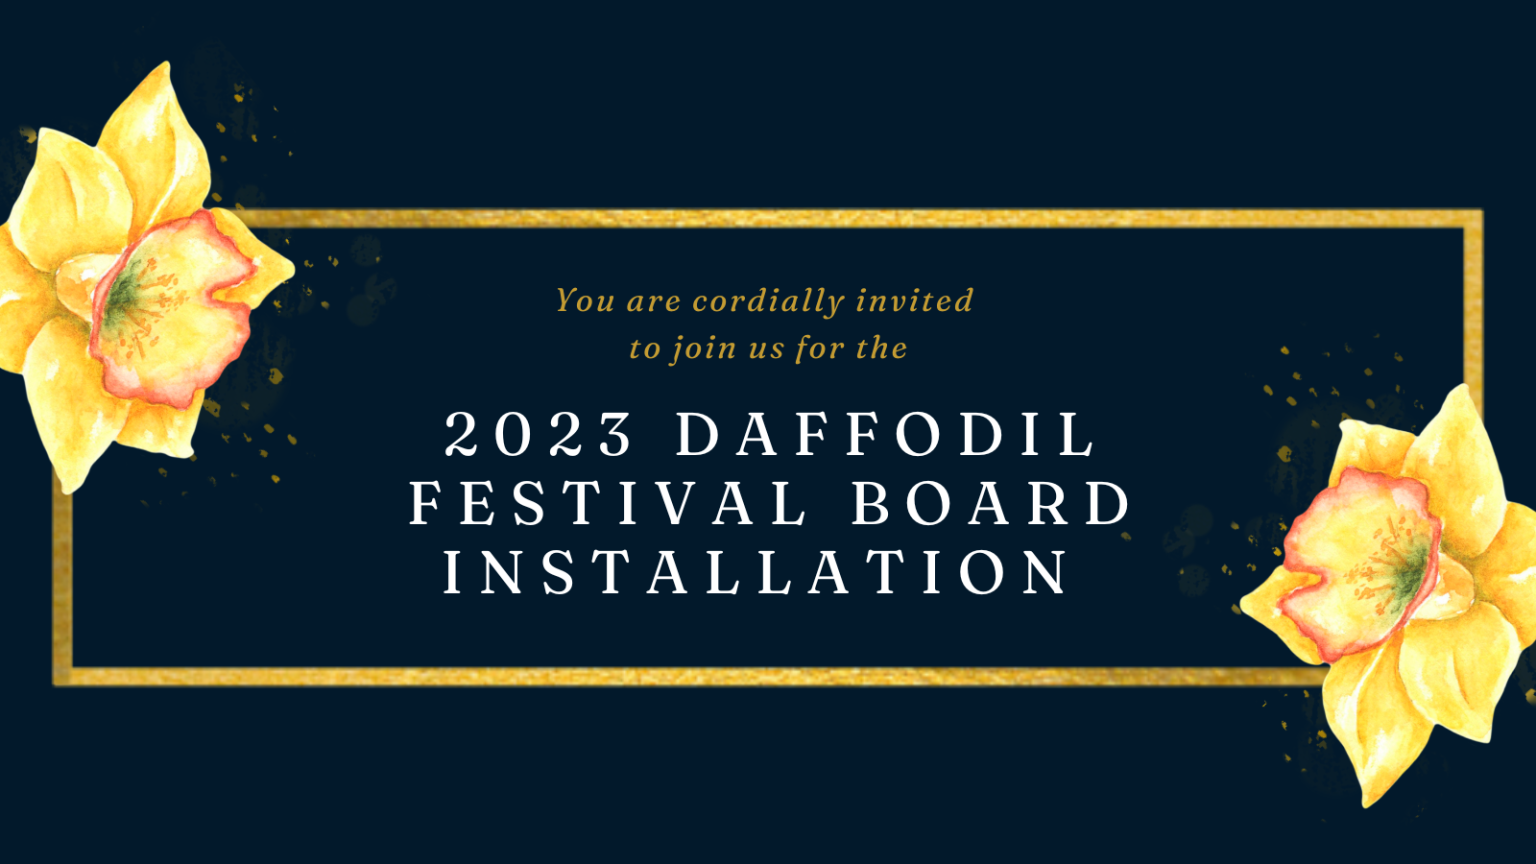 Daffodil Festival 2023 Board Installation - The Daffodil Festival